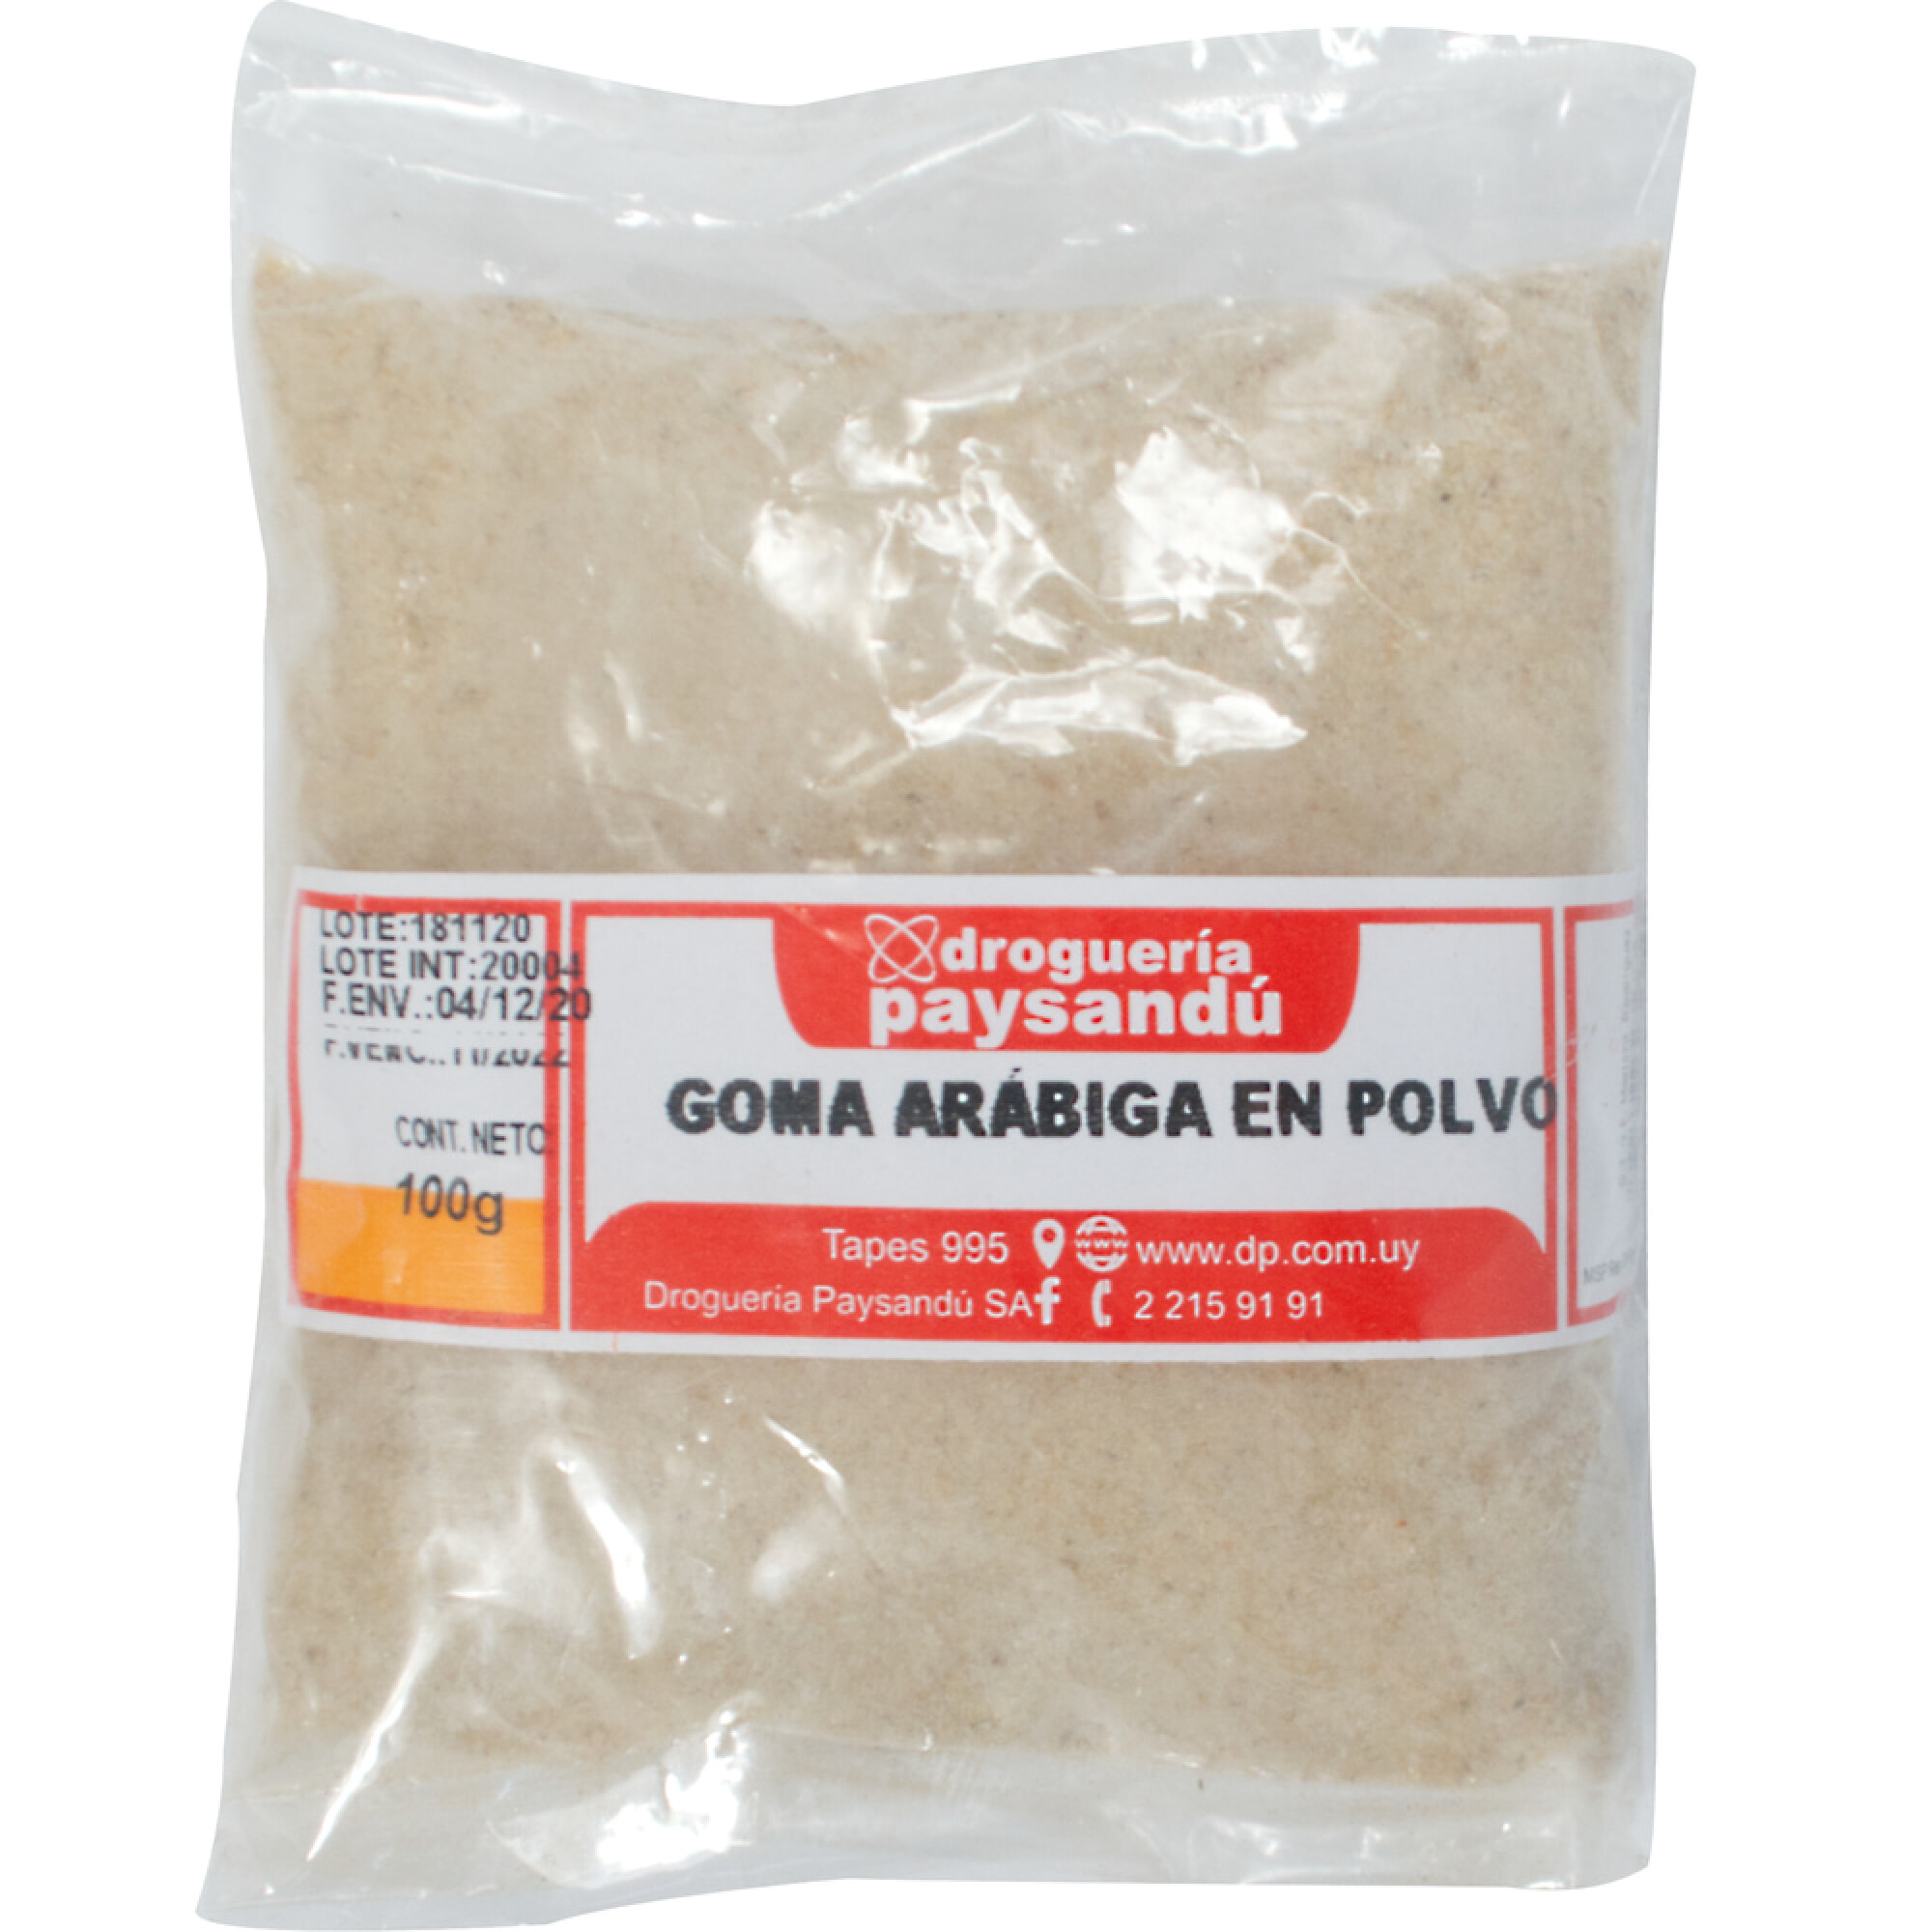 Goma Arabiga en Polvo - 100 g — Droguería Paysandú